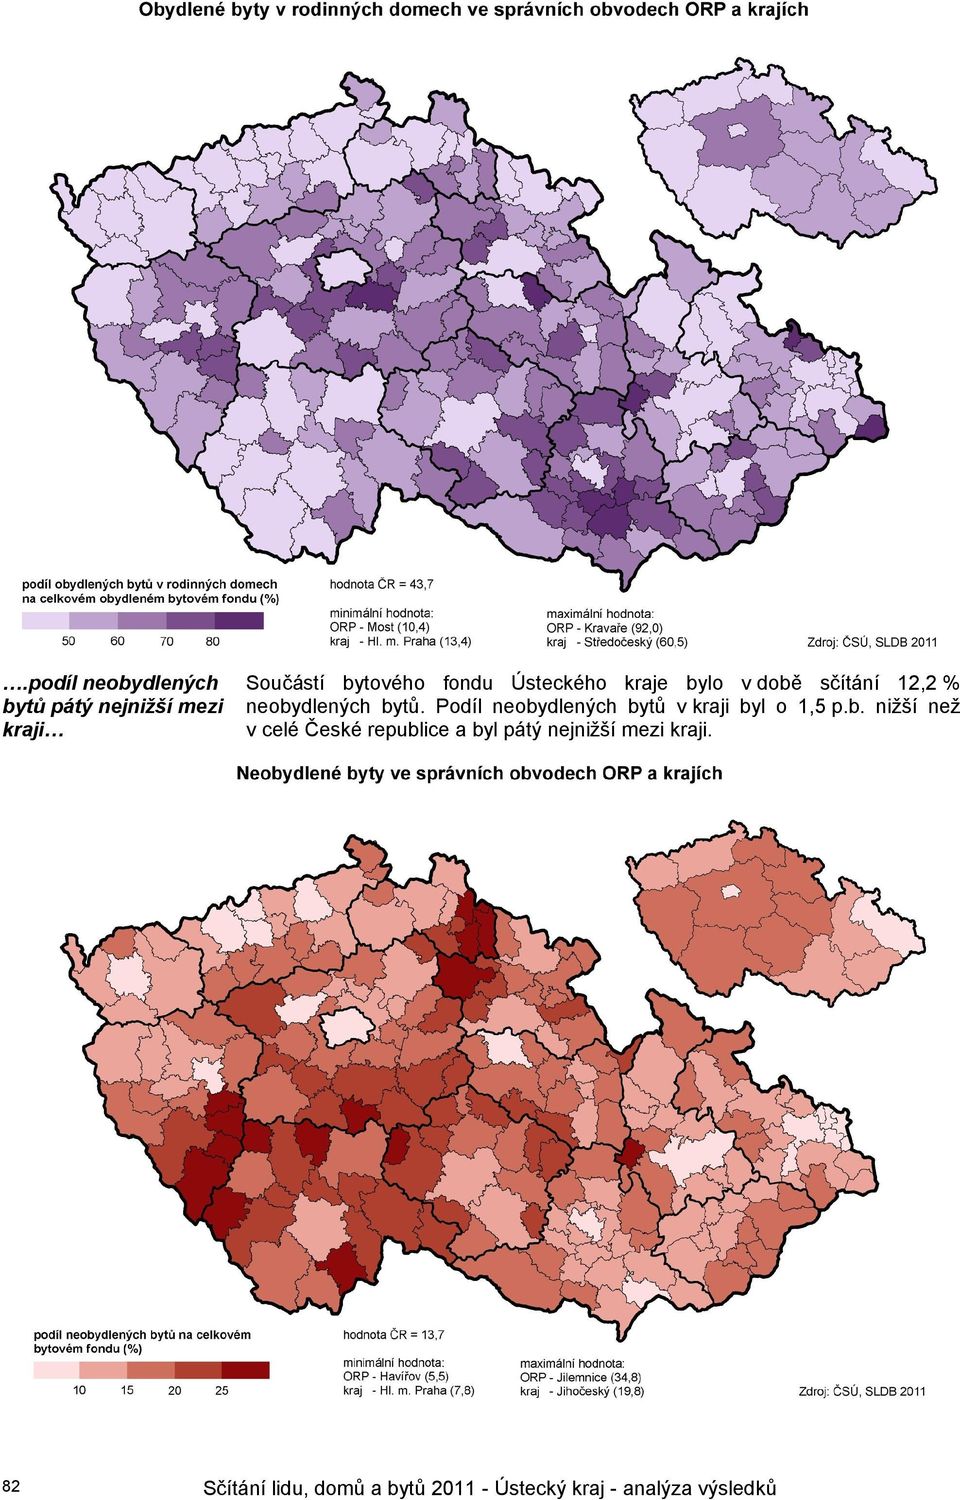 Podíl neobydlených bytů v kraji byl o 1,5 p.b. nižší než v celé České republice a byl pátý nejnižší mezi kraji.